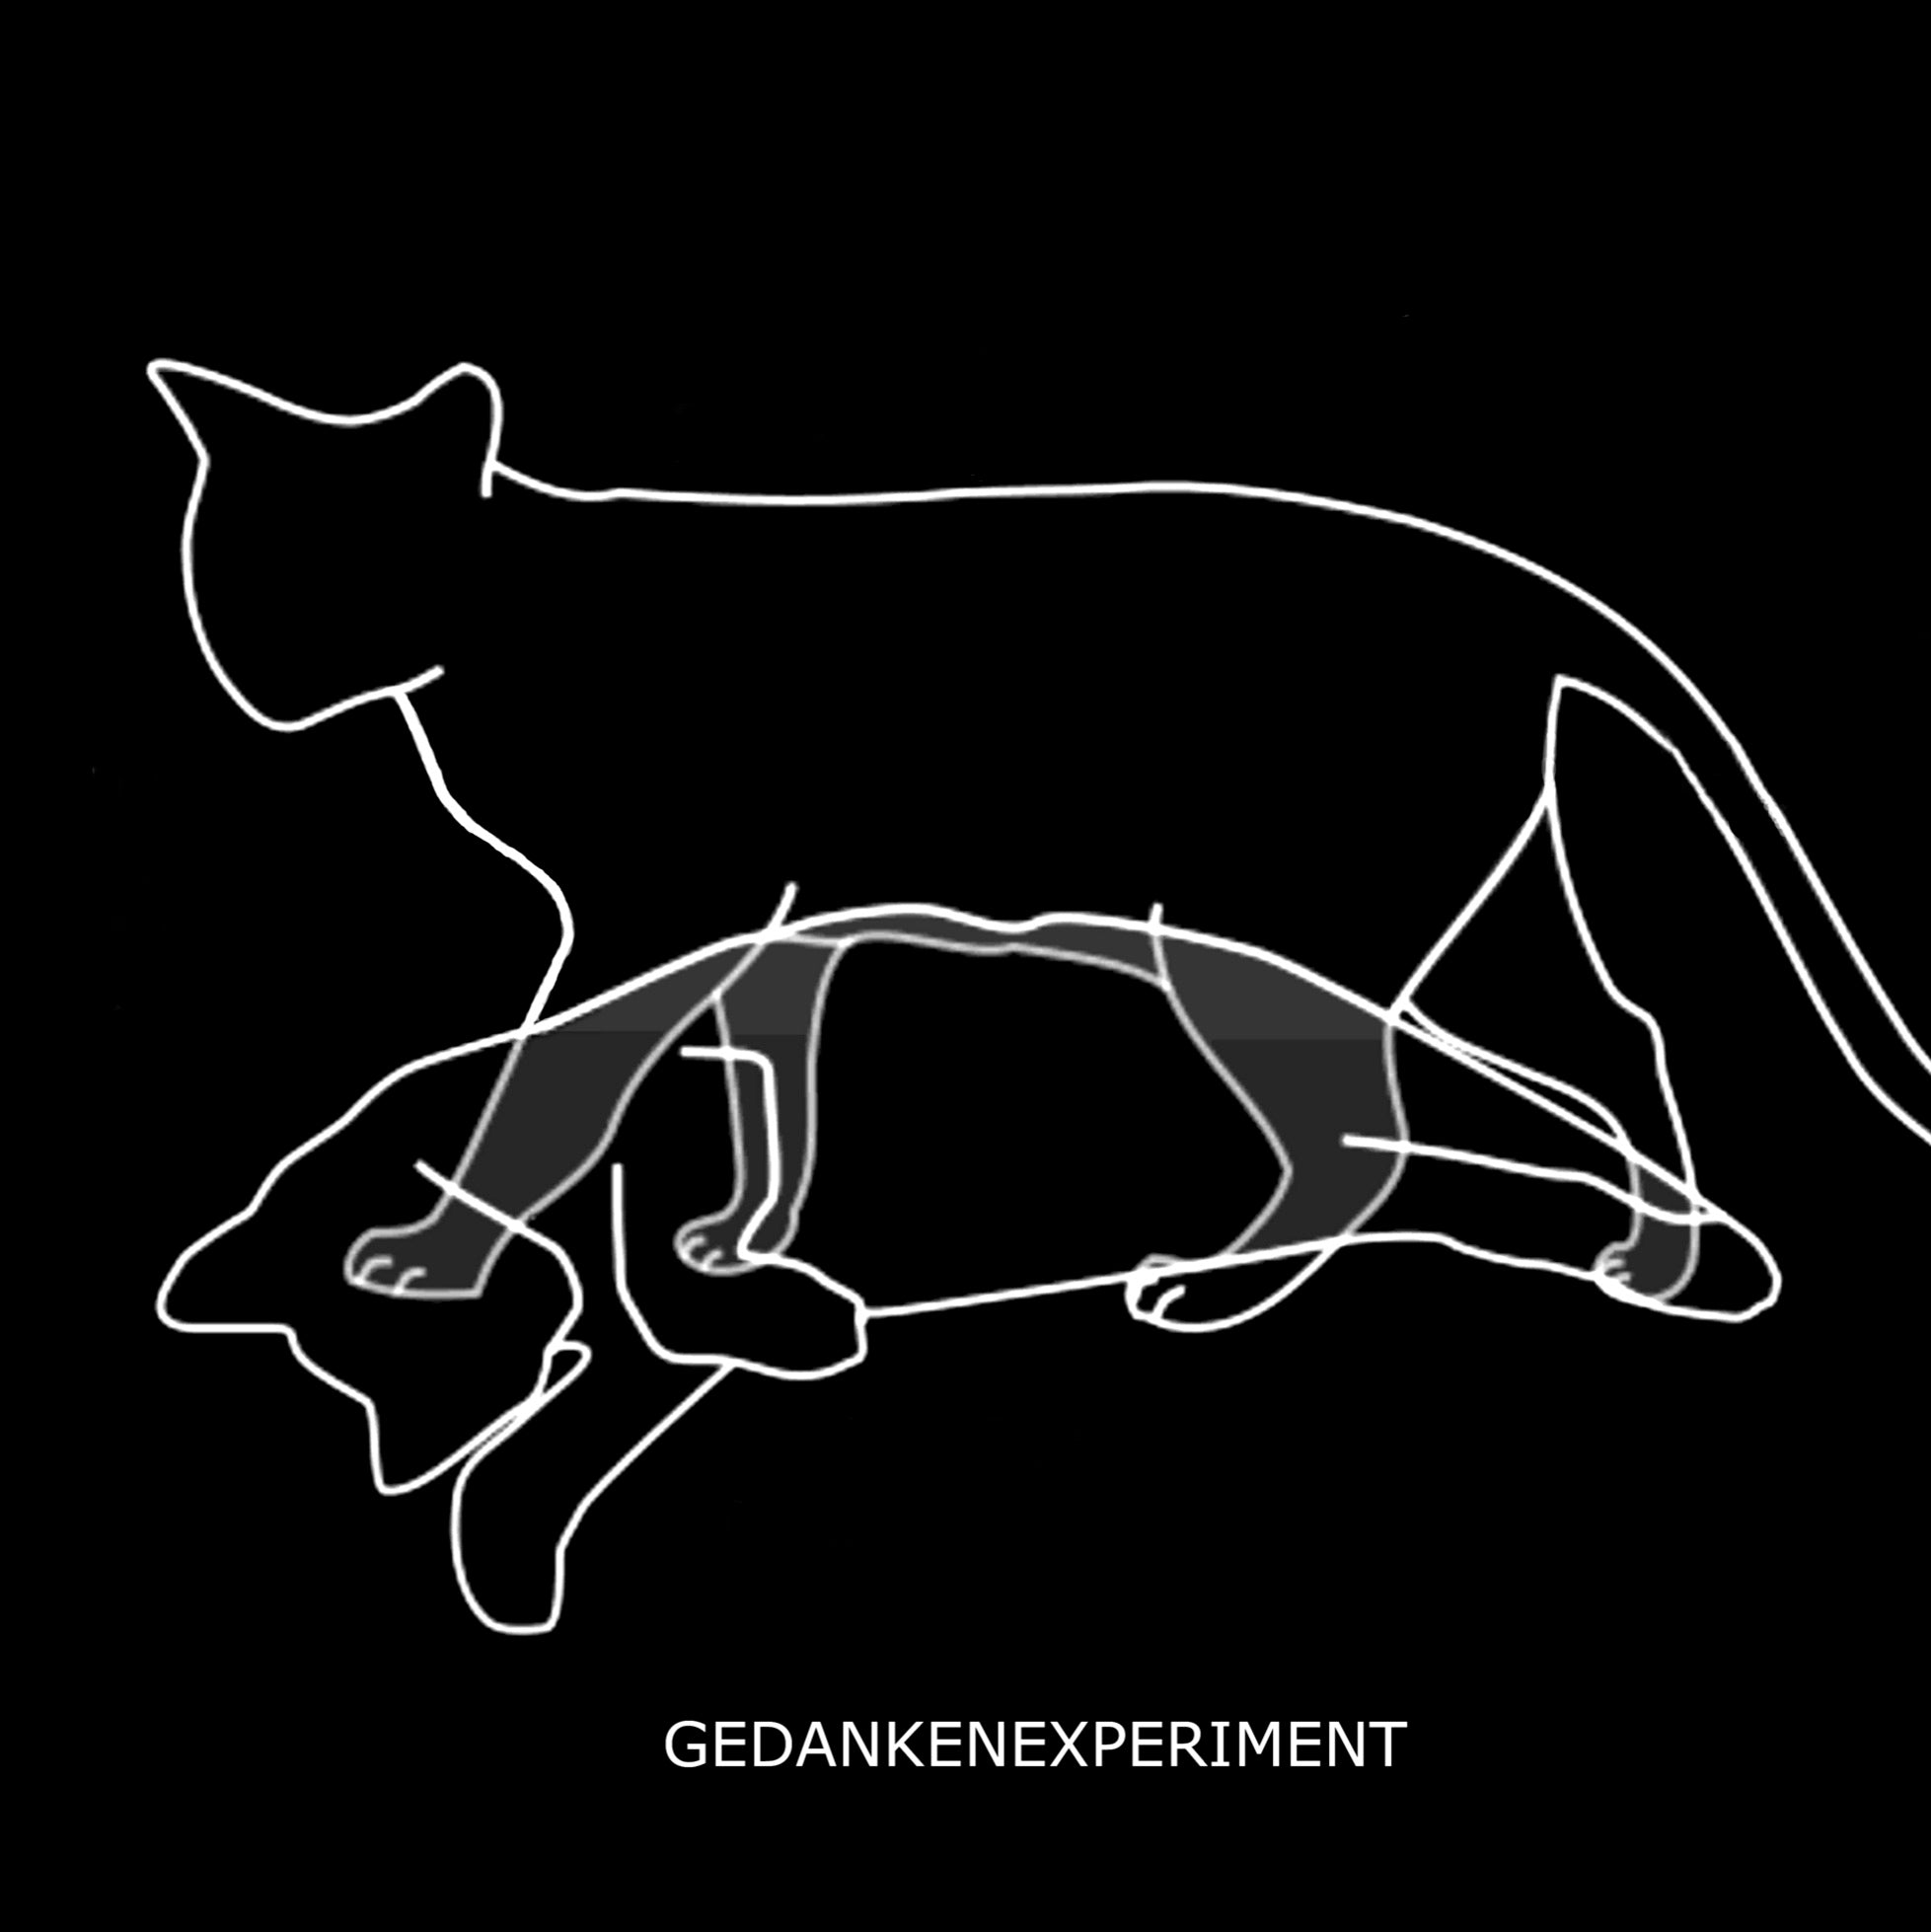 GEDANKENEXPERIMENT 'EXPERIMENT DEFINED' 12" (REISSUE)